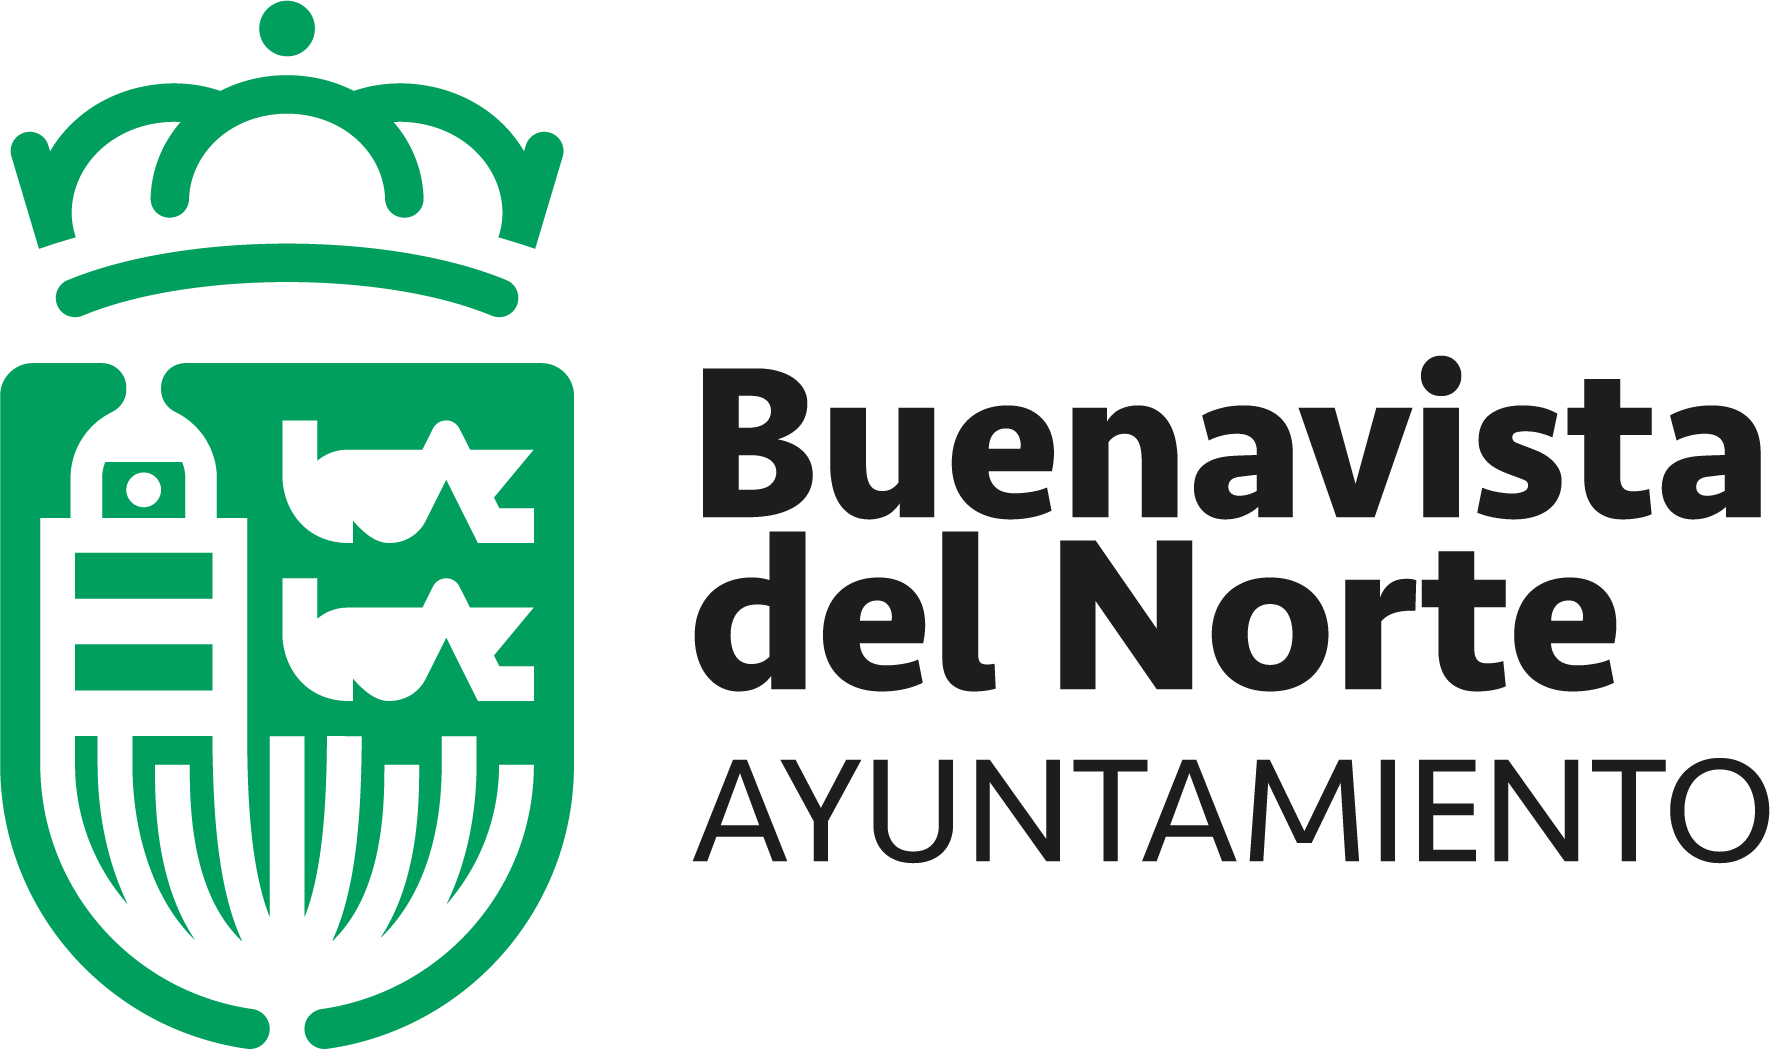 Ayuntamiento de Buenavista del Norte